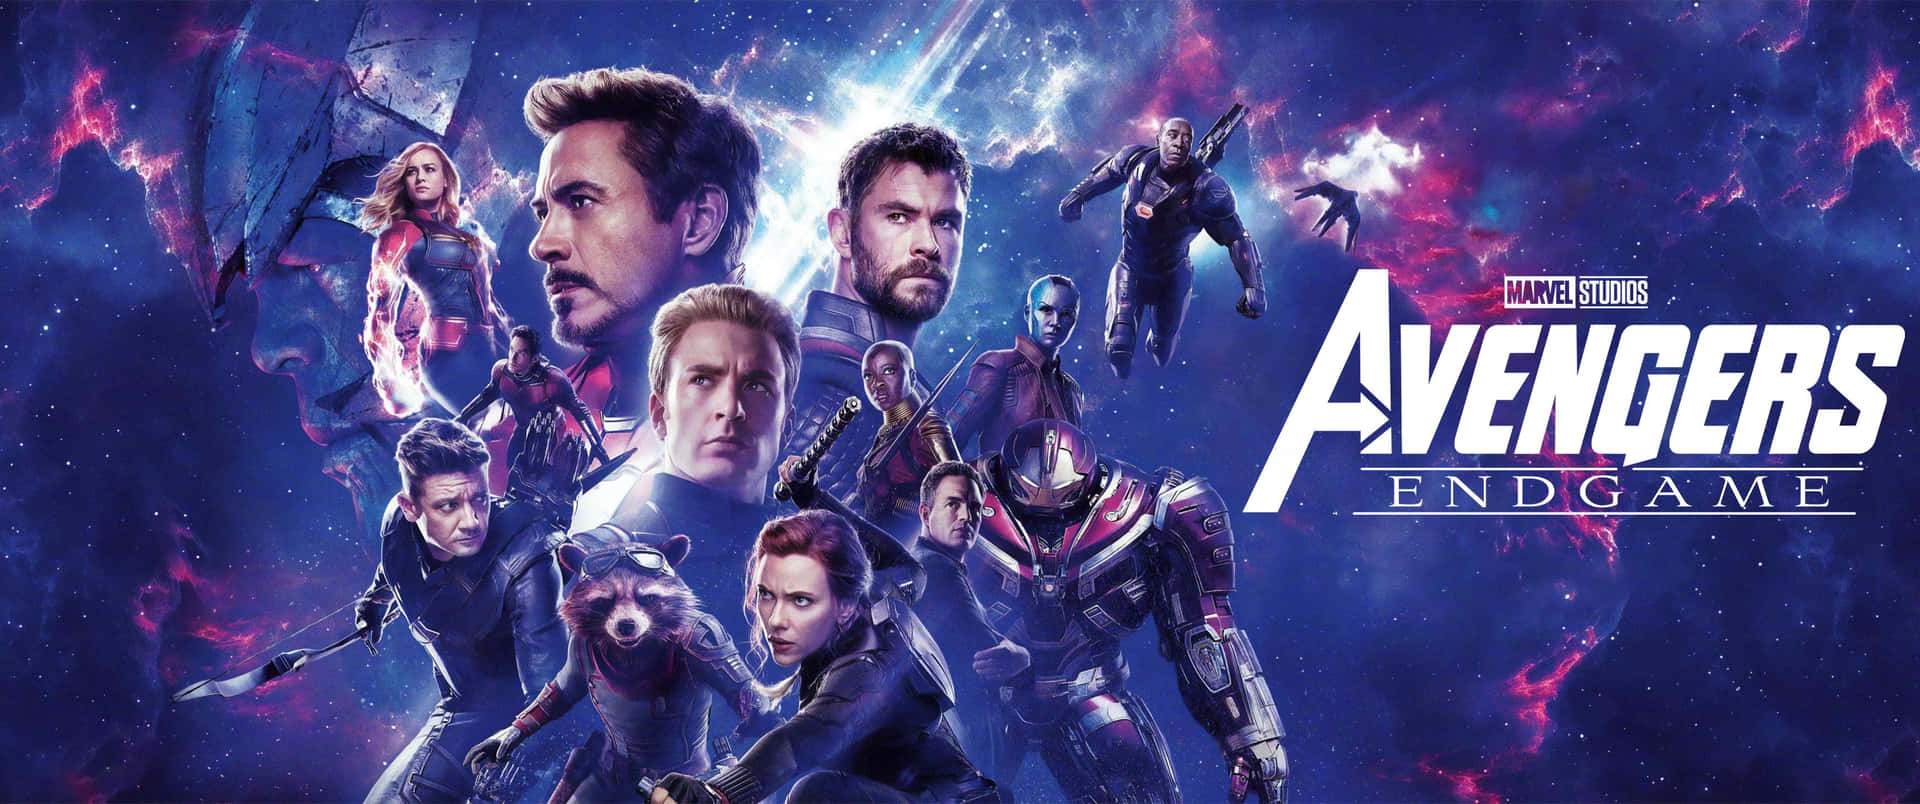 3440x 1440 Avengers Endgame Från Marvel. Wallpaper